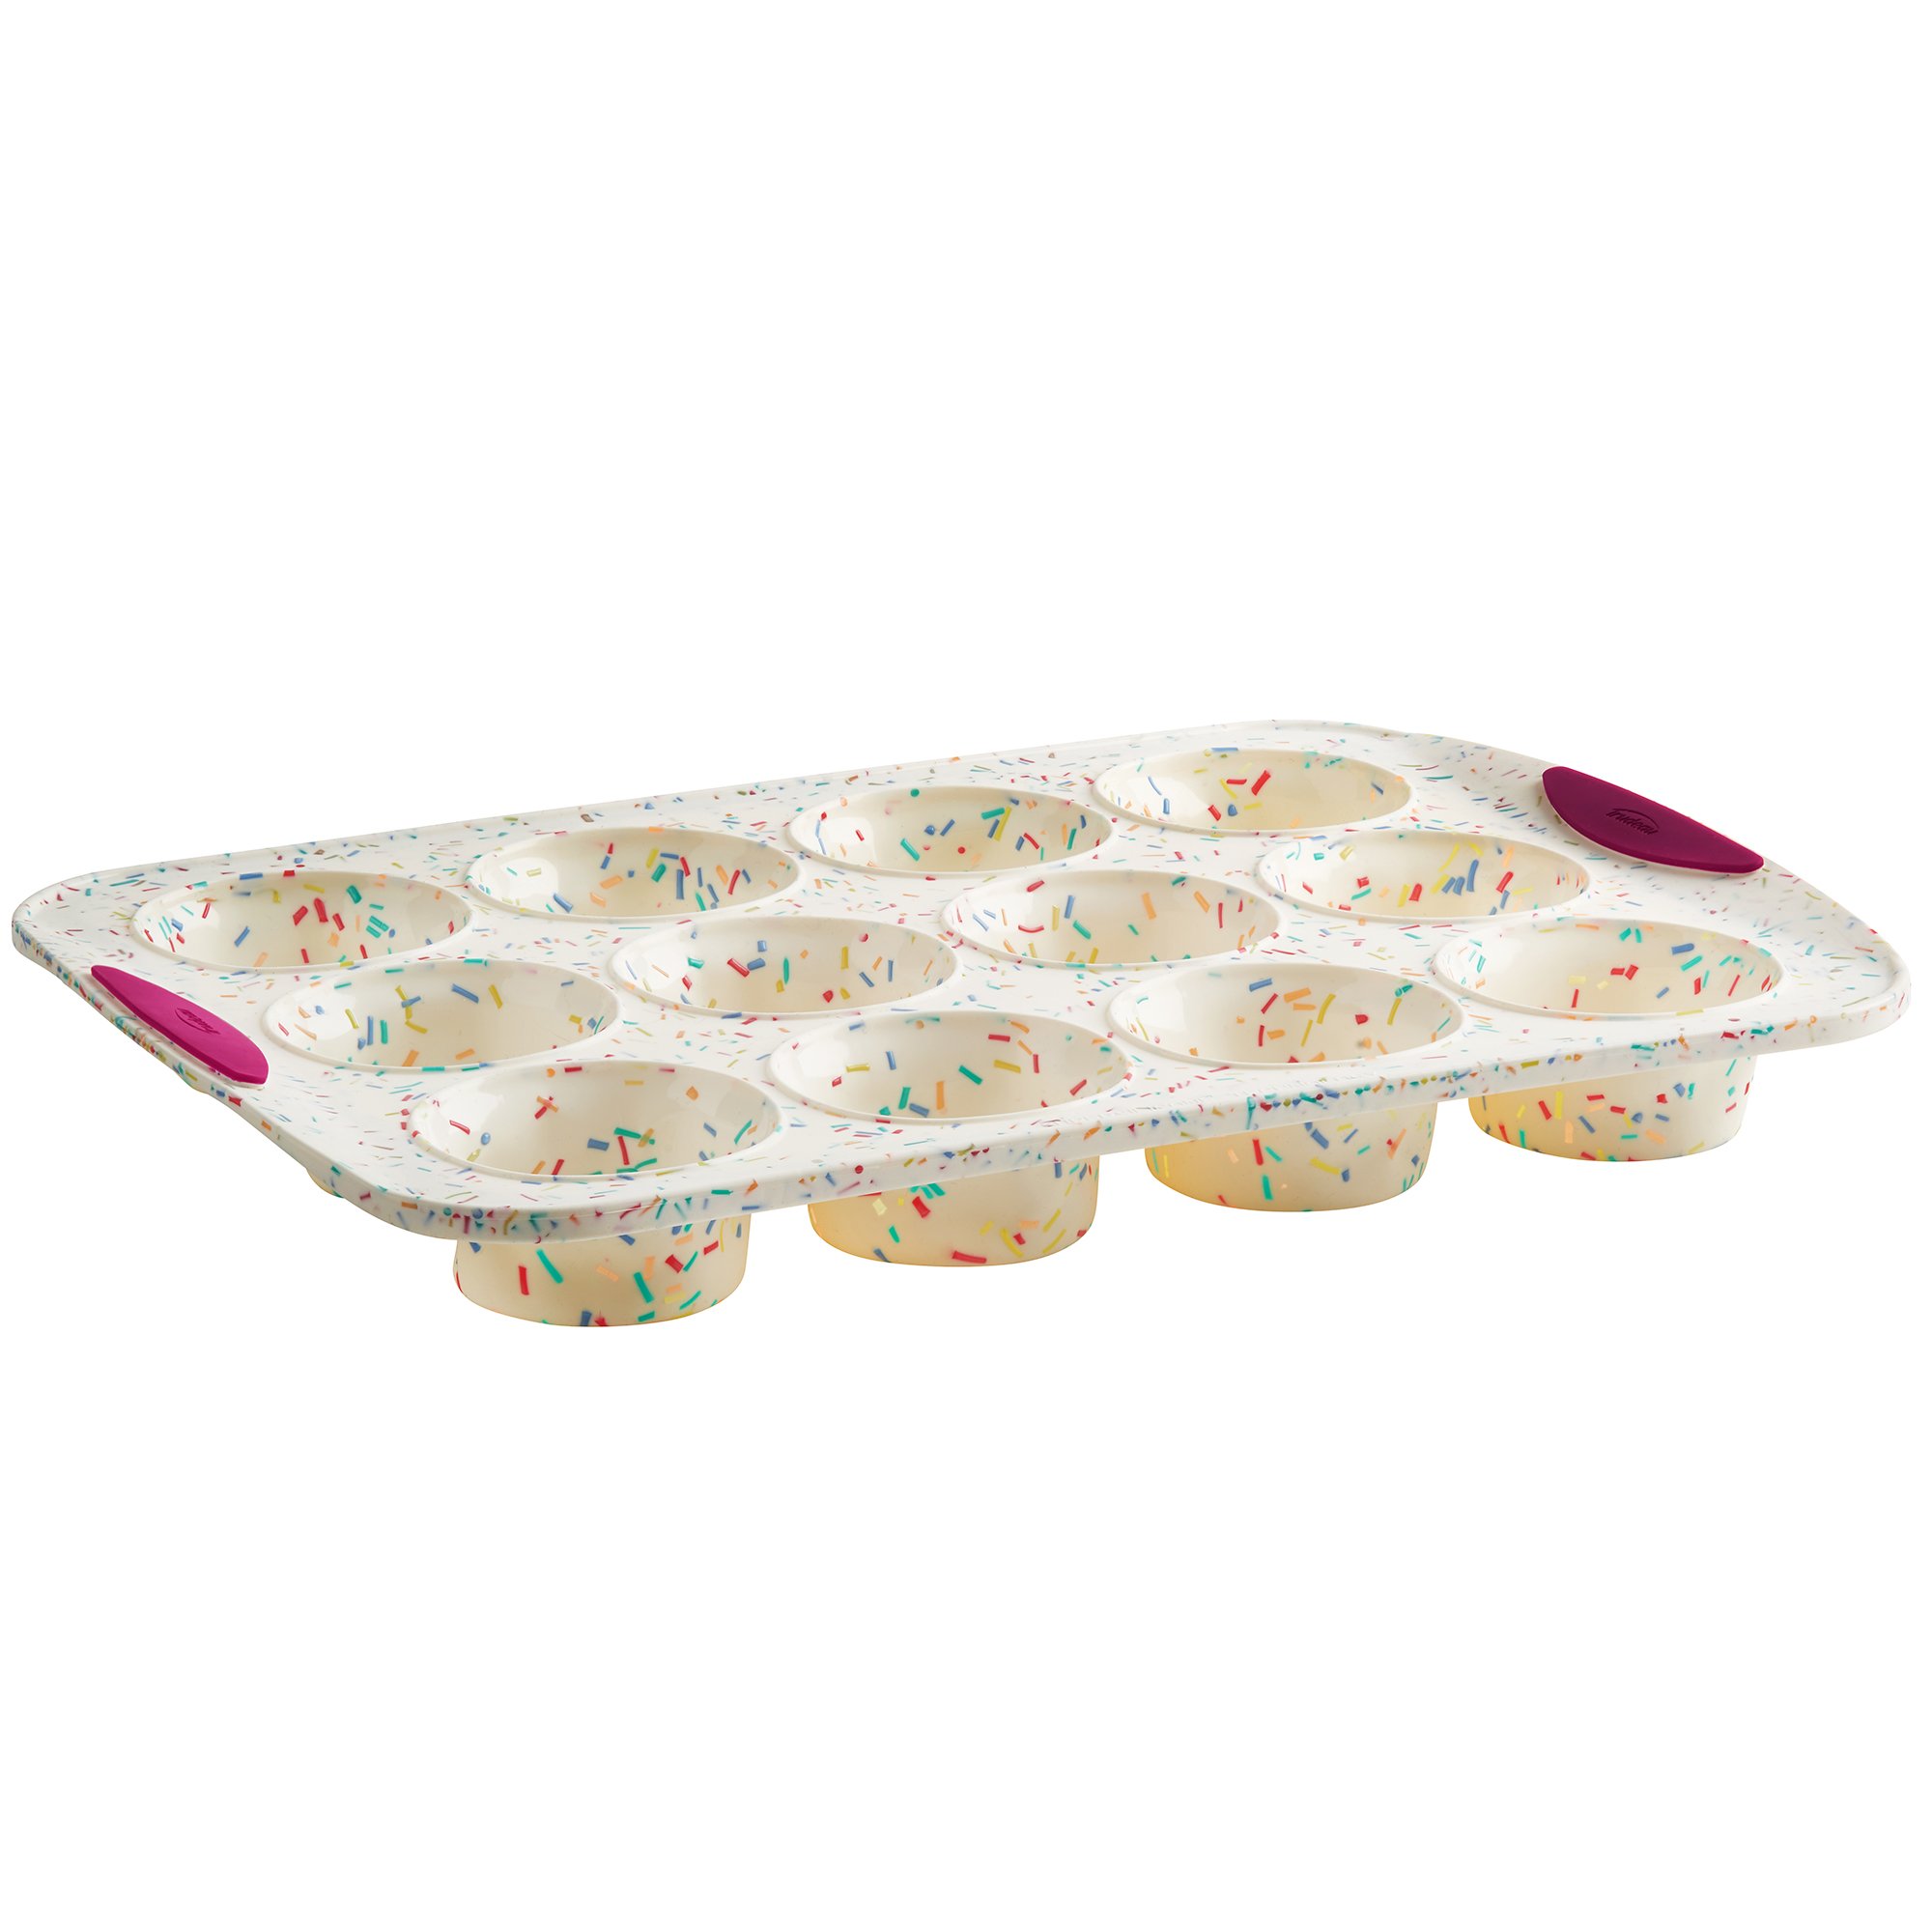 Trudeau Silicone 12 Count Muffin Pan, Multicolor Confetti, Dishwasher Safe, Size: 12 Cup